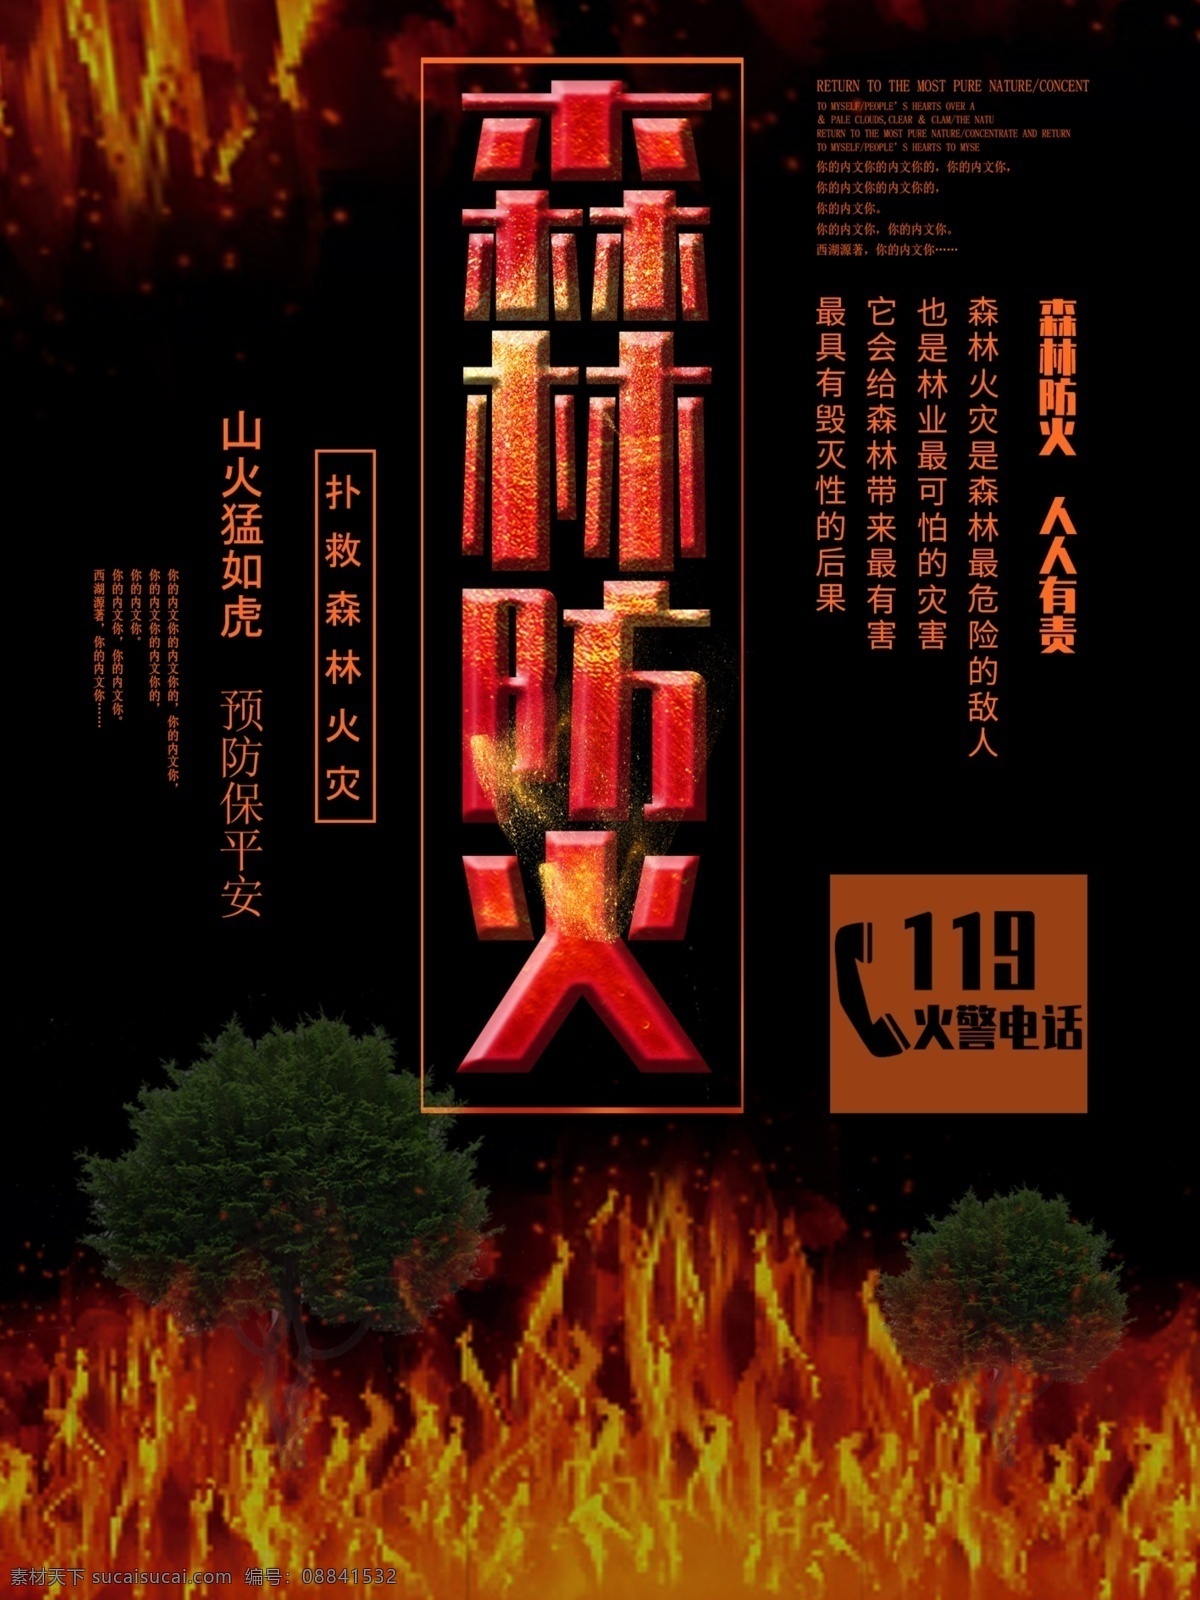 森林防火 公益 宣传海报 人人 有责 公益宣传海报 森林火灾 消防展板 消防安全